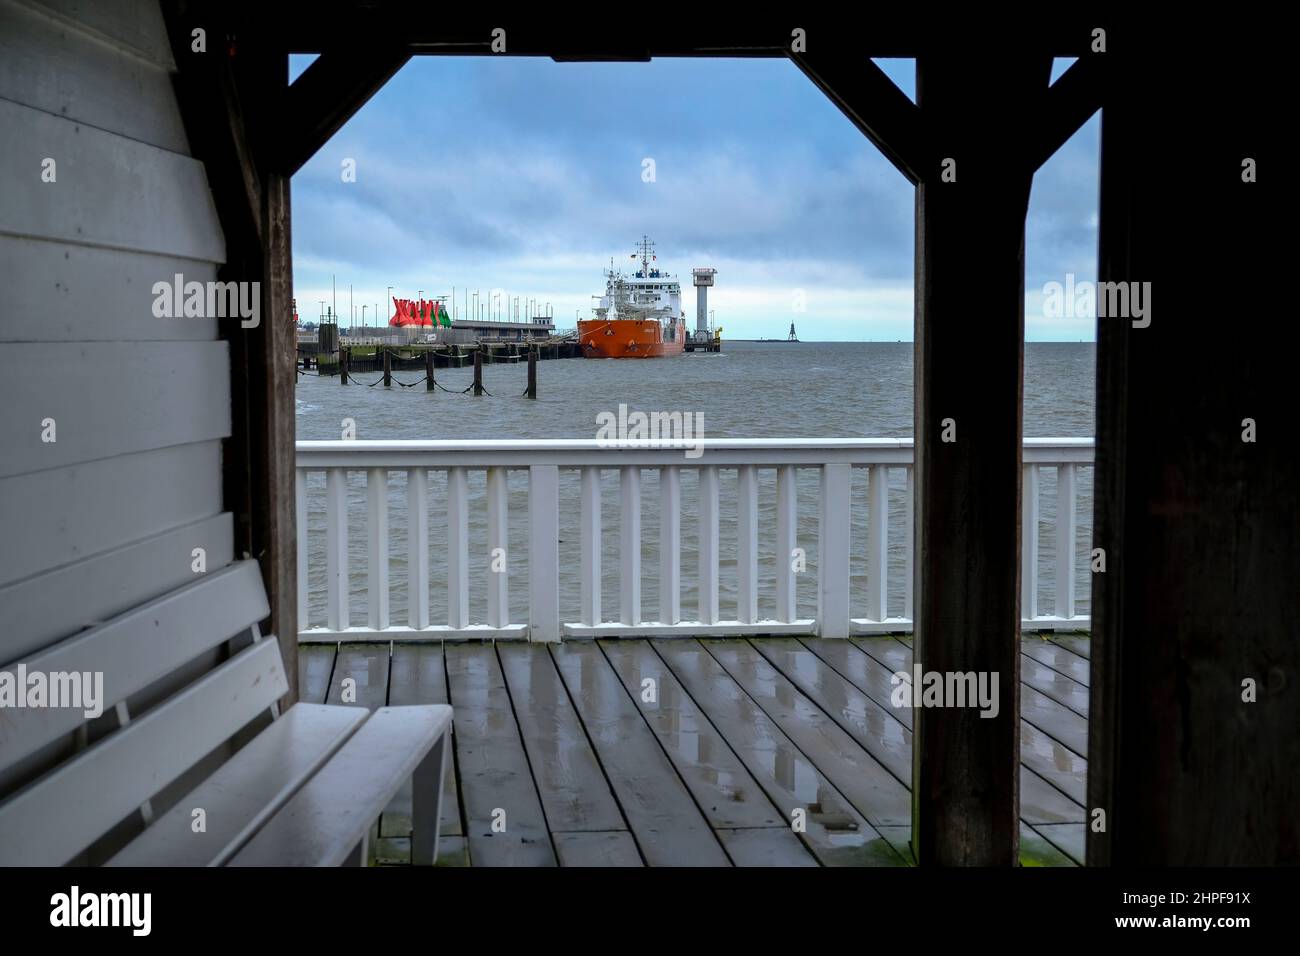 11.02.2022, Cuxhaven, Niedersachsen, Deutschland - Blick von der Aussichtsplattform auf dem alten Pier mit dem Namen Alte Liebe im Hafen von Cuxhaven Stock Photo